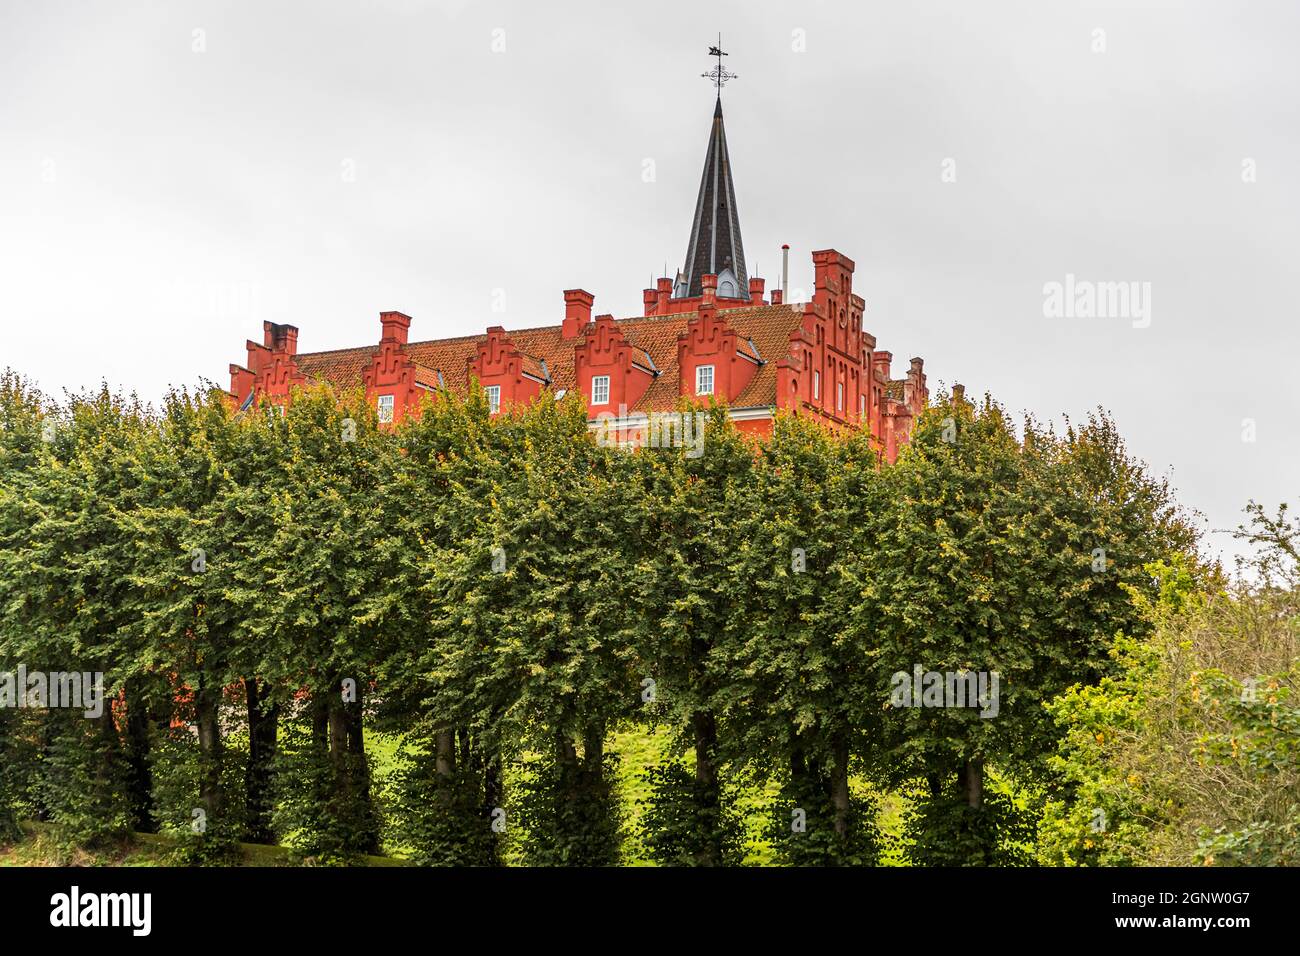 Das Schloss Tranekær leuchtet rot im Park. Die Burg existiert seit dem 13. Jahrhundert an dieser Stelle und wurde von den Beamten des dänischen Königs auf der Insel Langeland, Dänemark, als offizielle Residenz genutzt Stockfoto